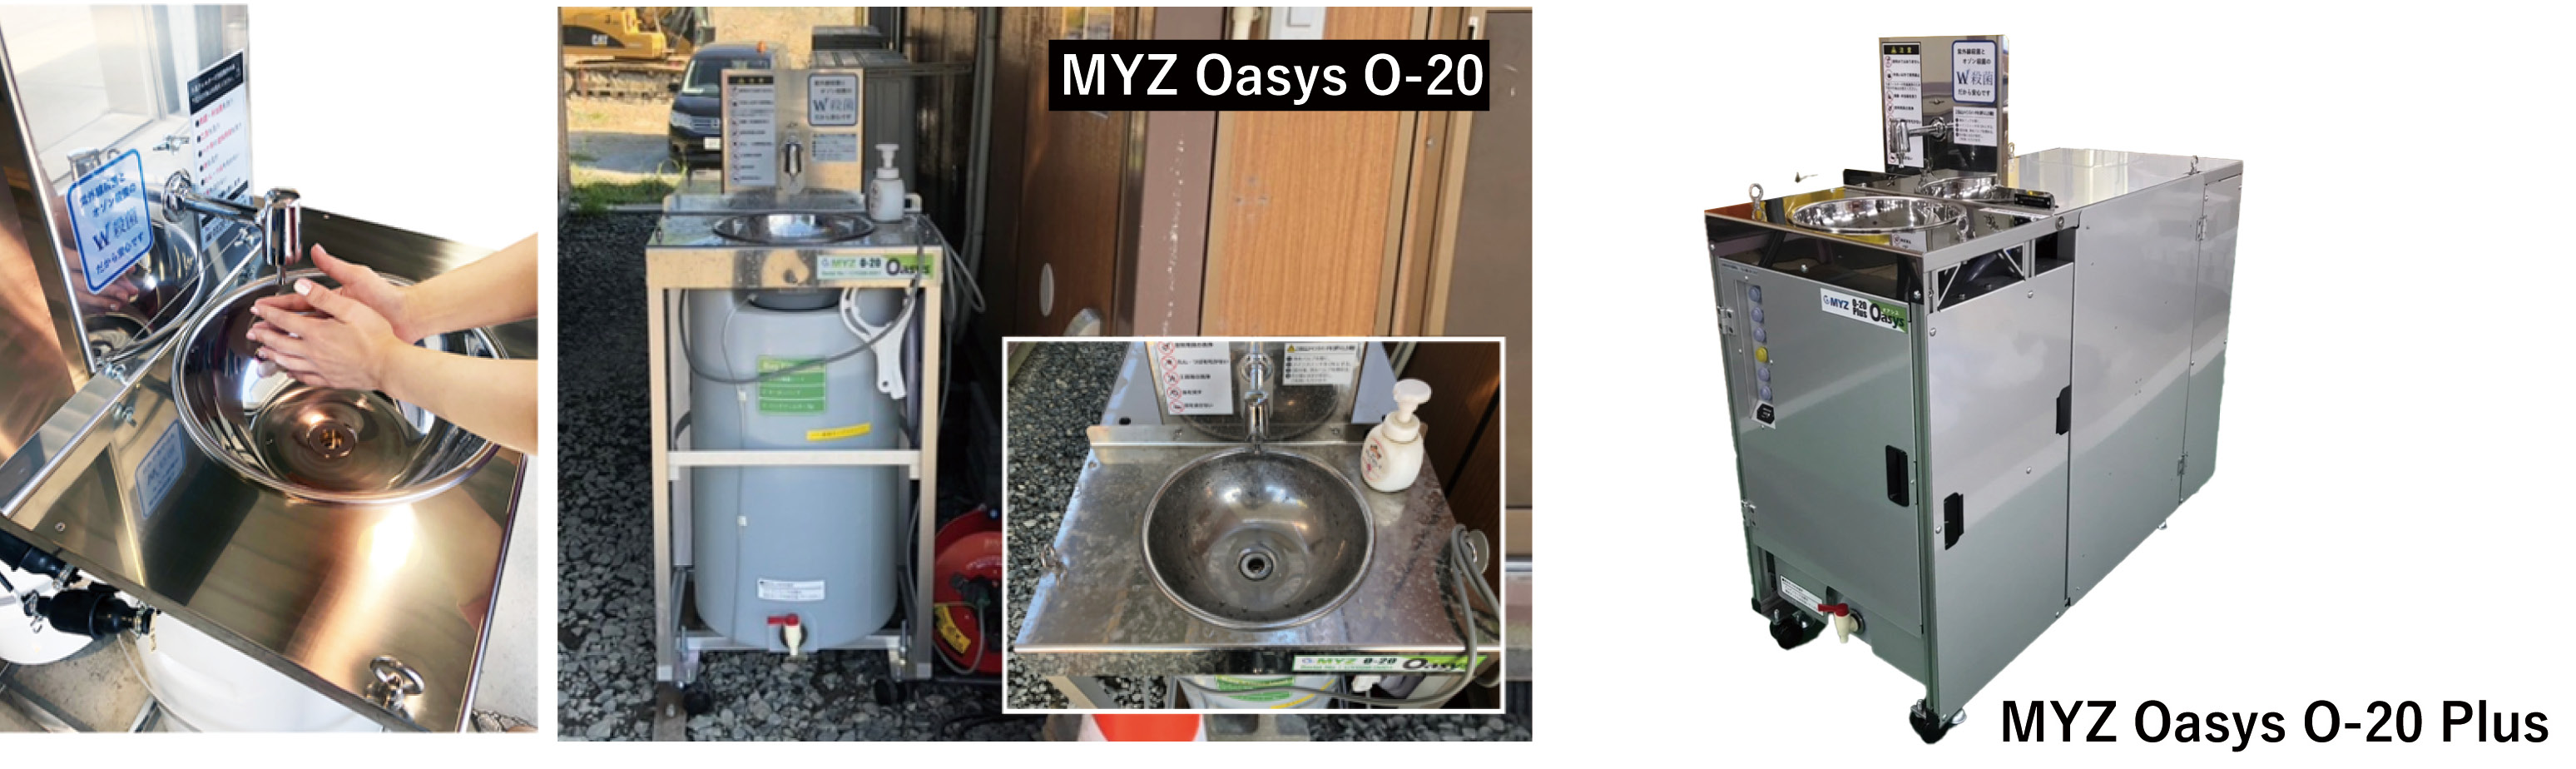 循環式手洗いユニット MYZ Oasys